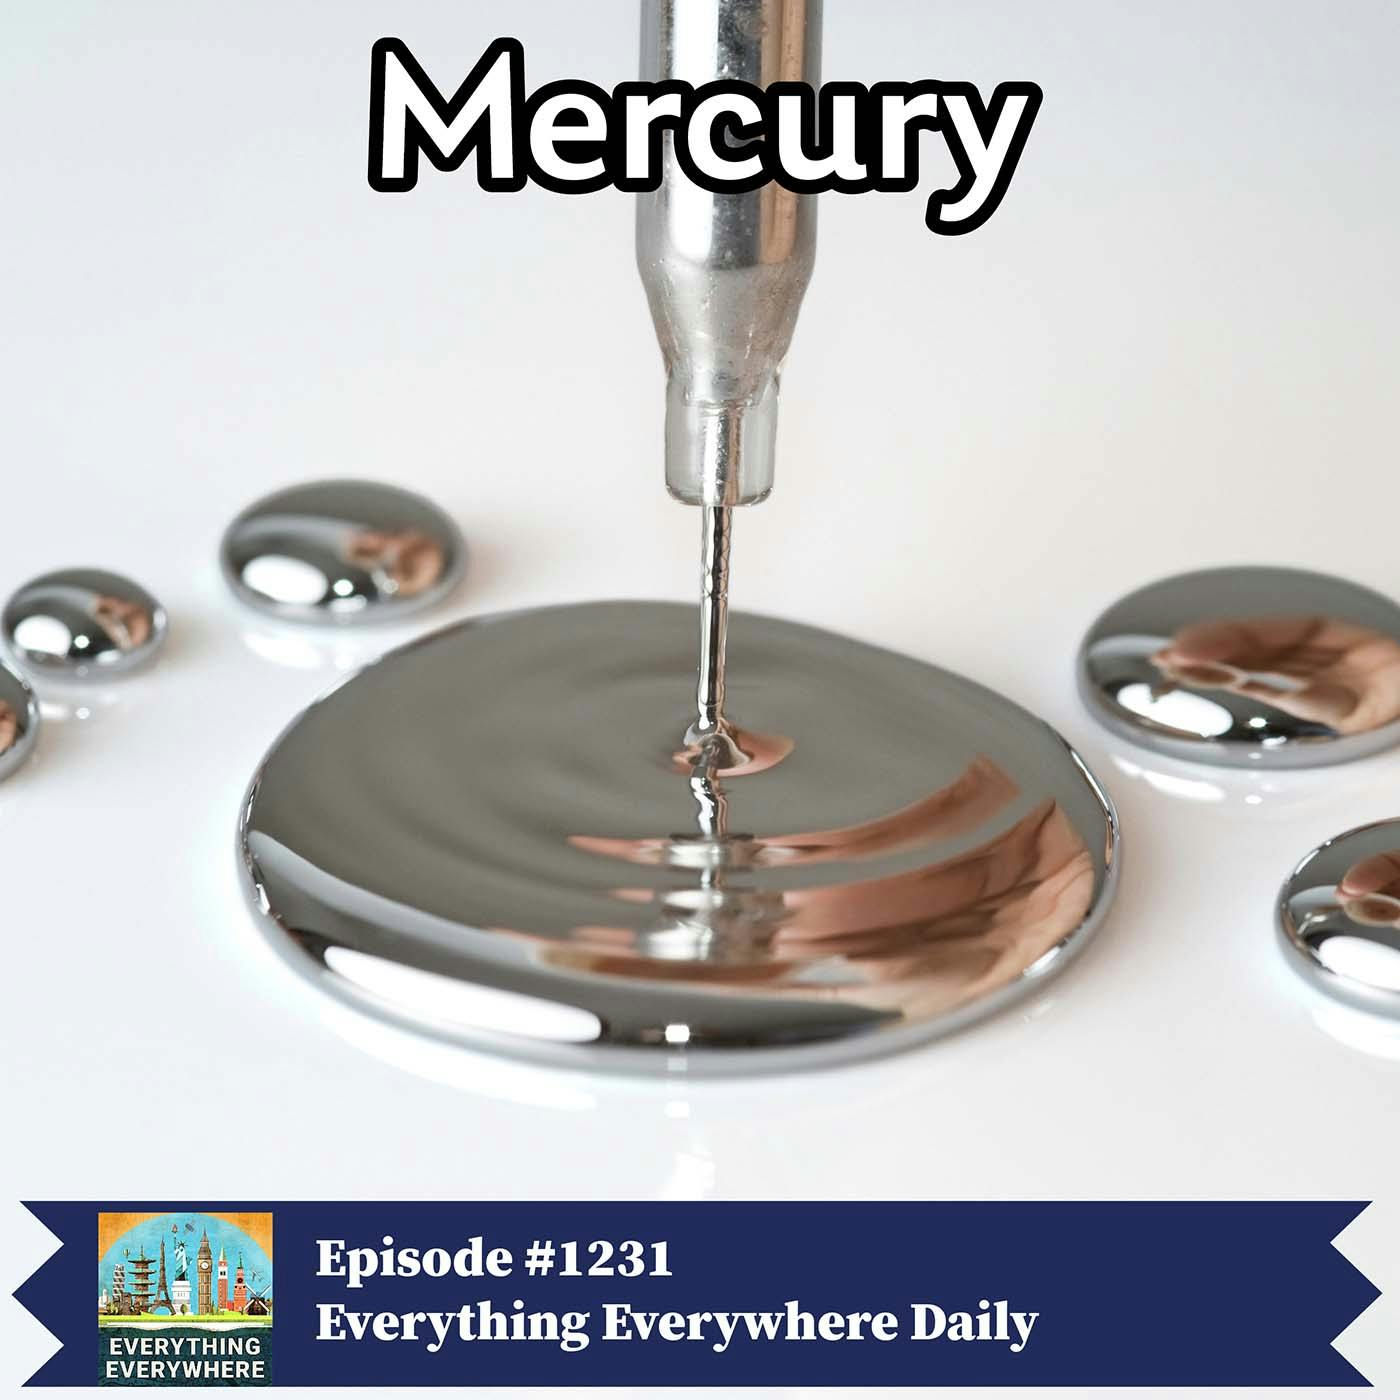 The Element Mercury